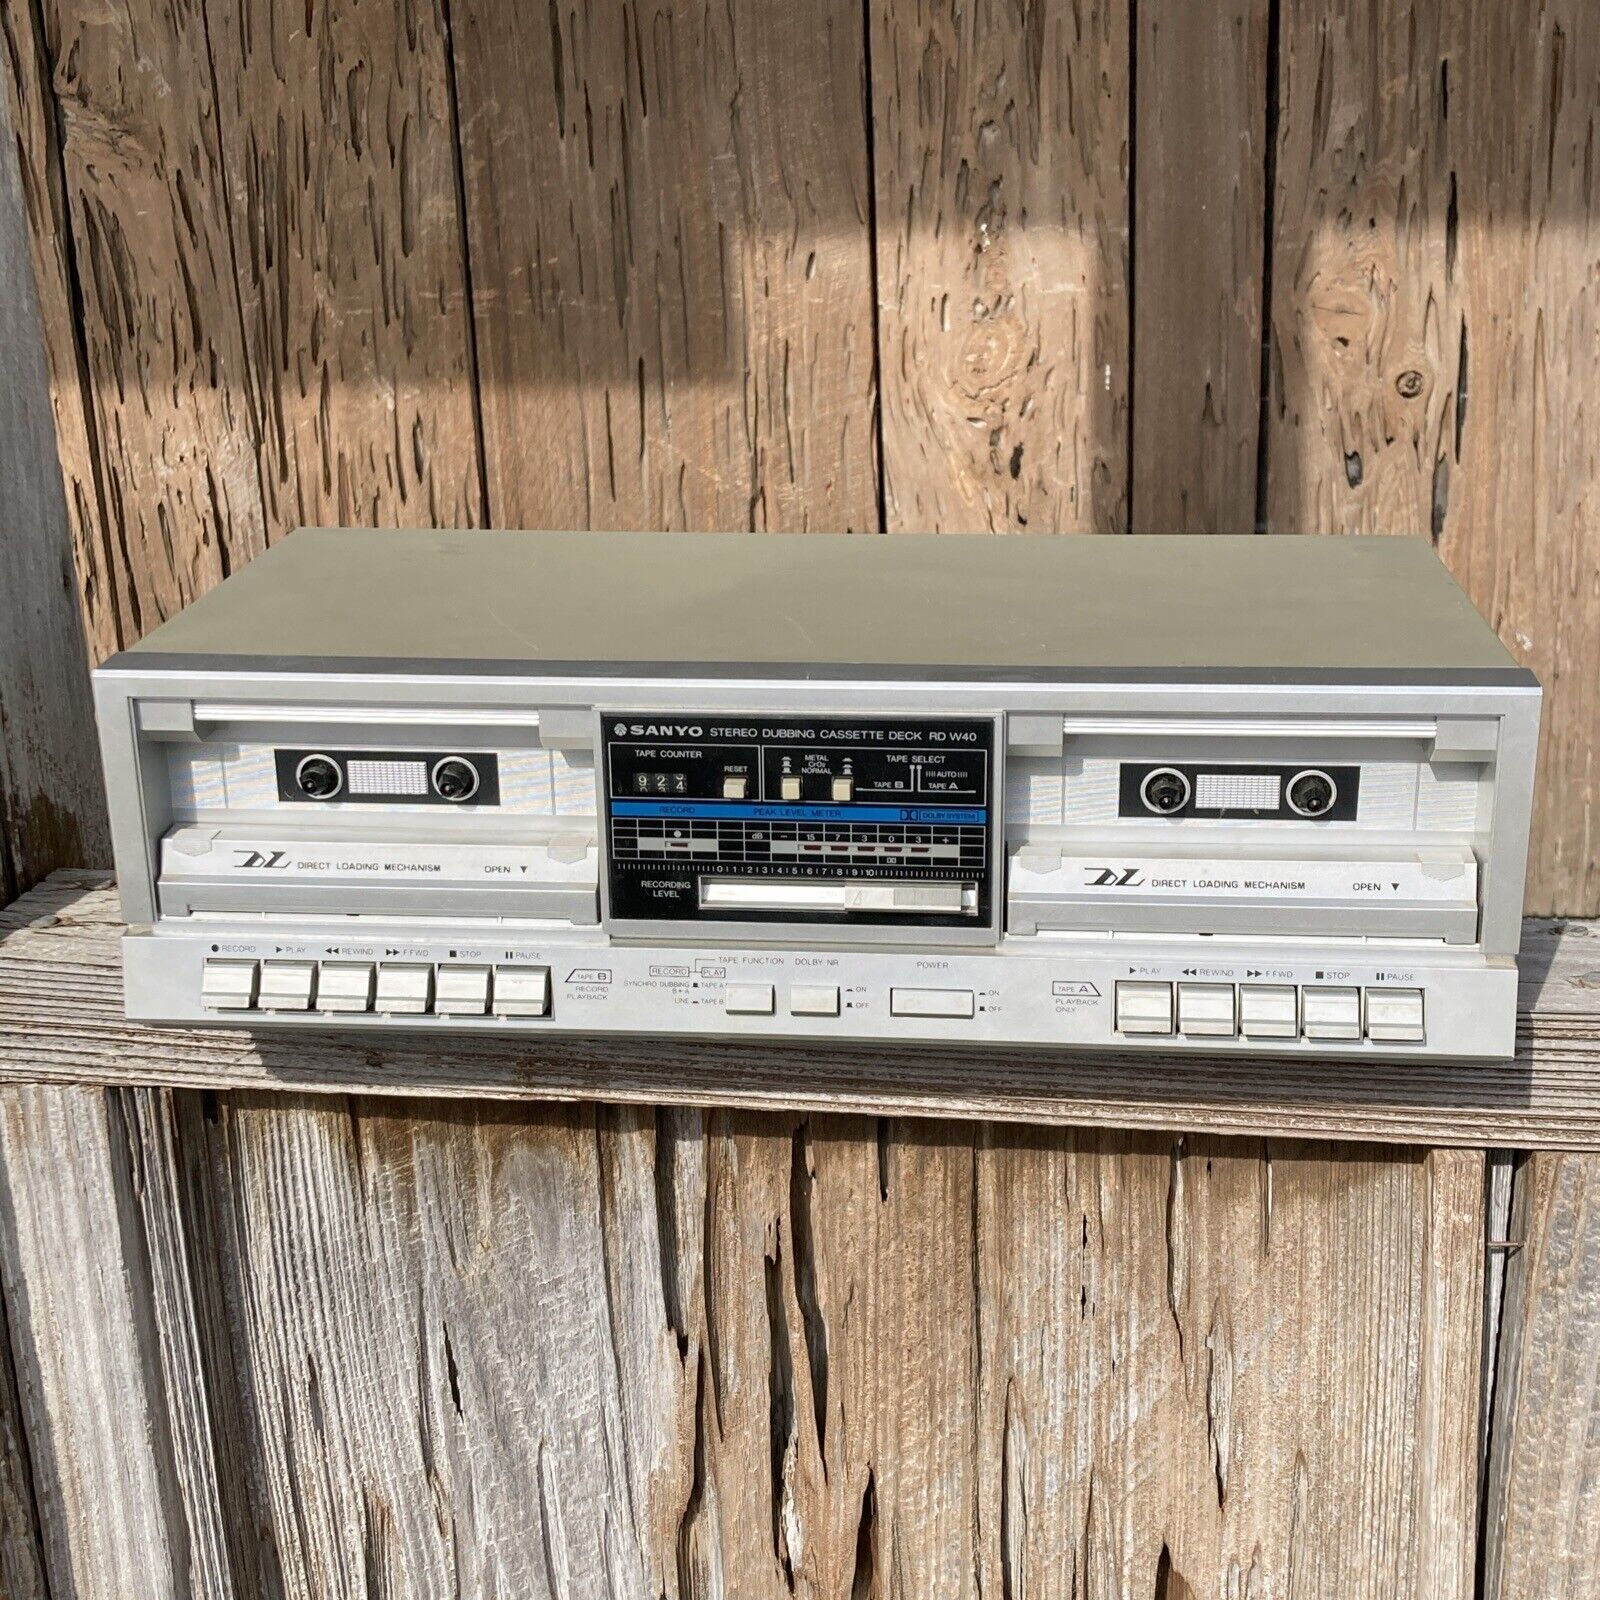 Двойная кассетная дека Sanyo Stereo Dubbing RD-W40 с прямой загрузкой-Япония-1985-год